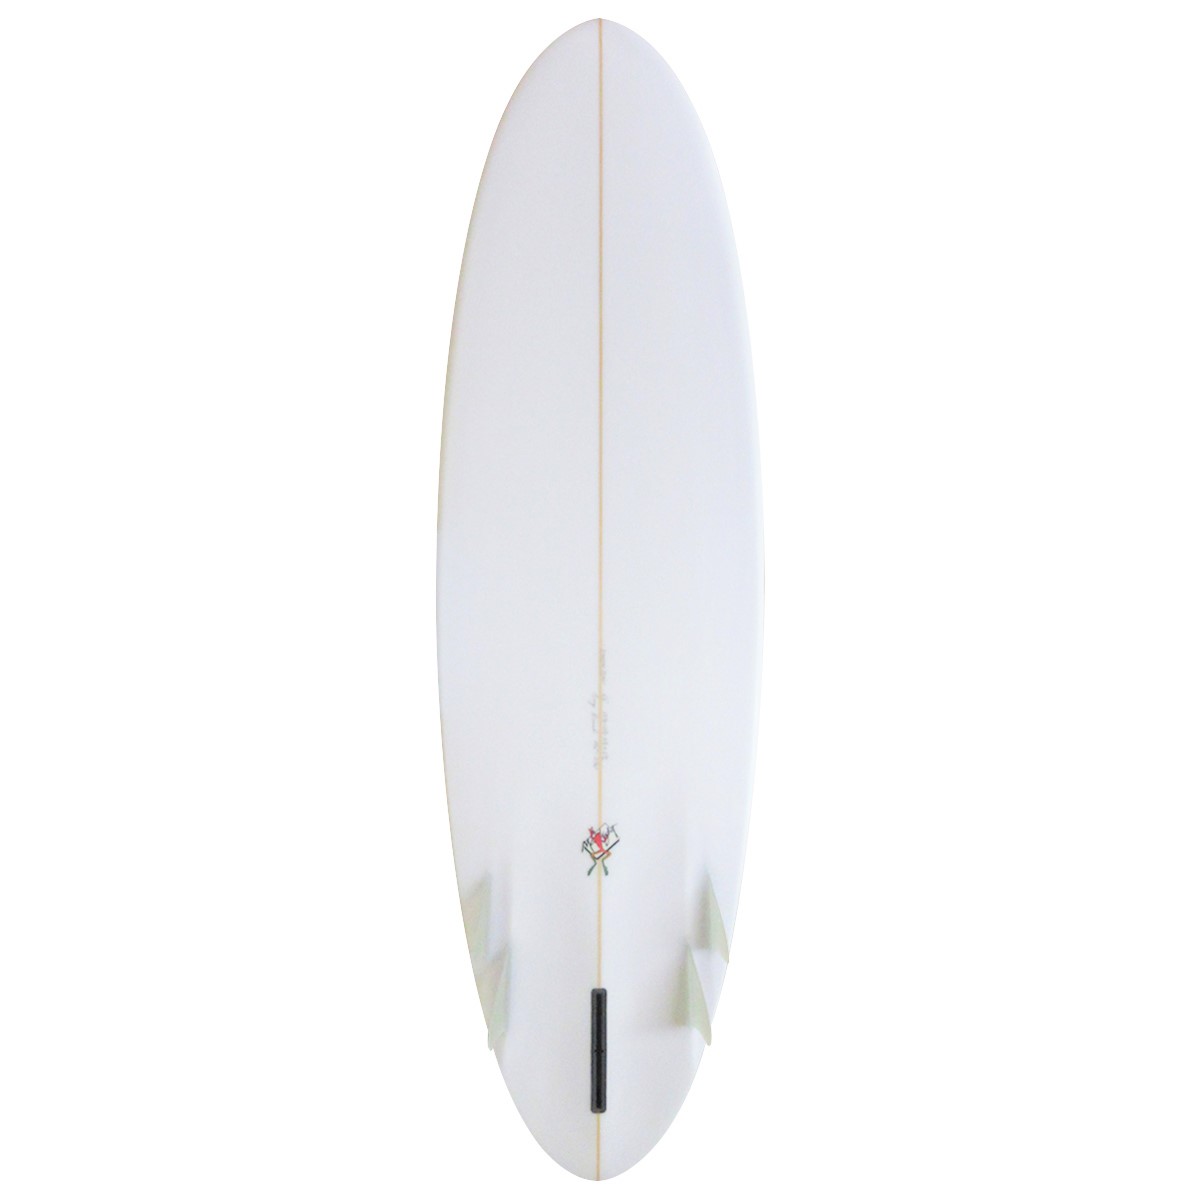 Gary Hanel Surfboards : Bonzer Egg 6'6"